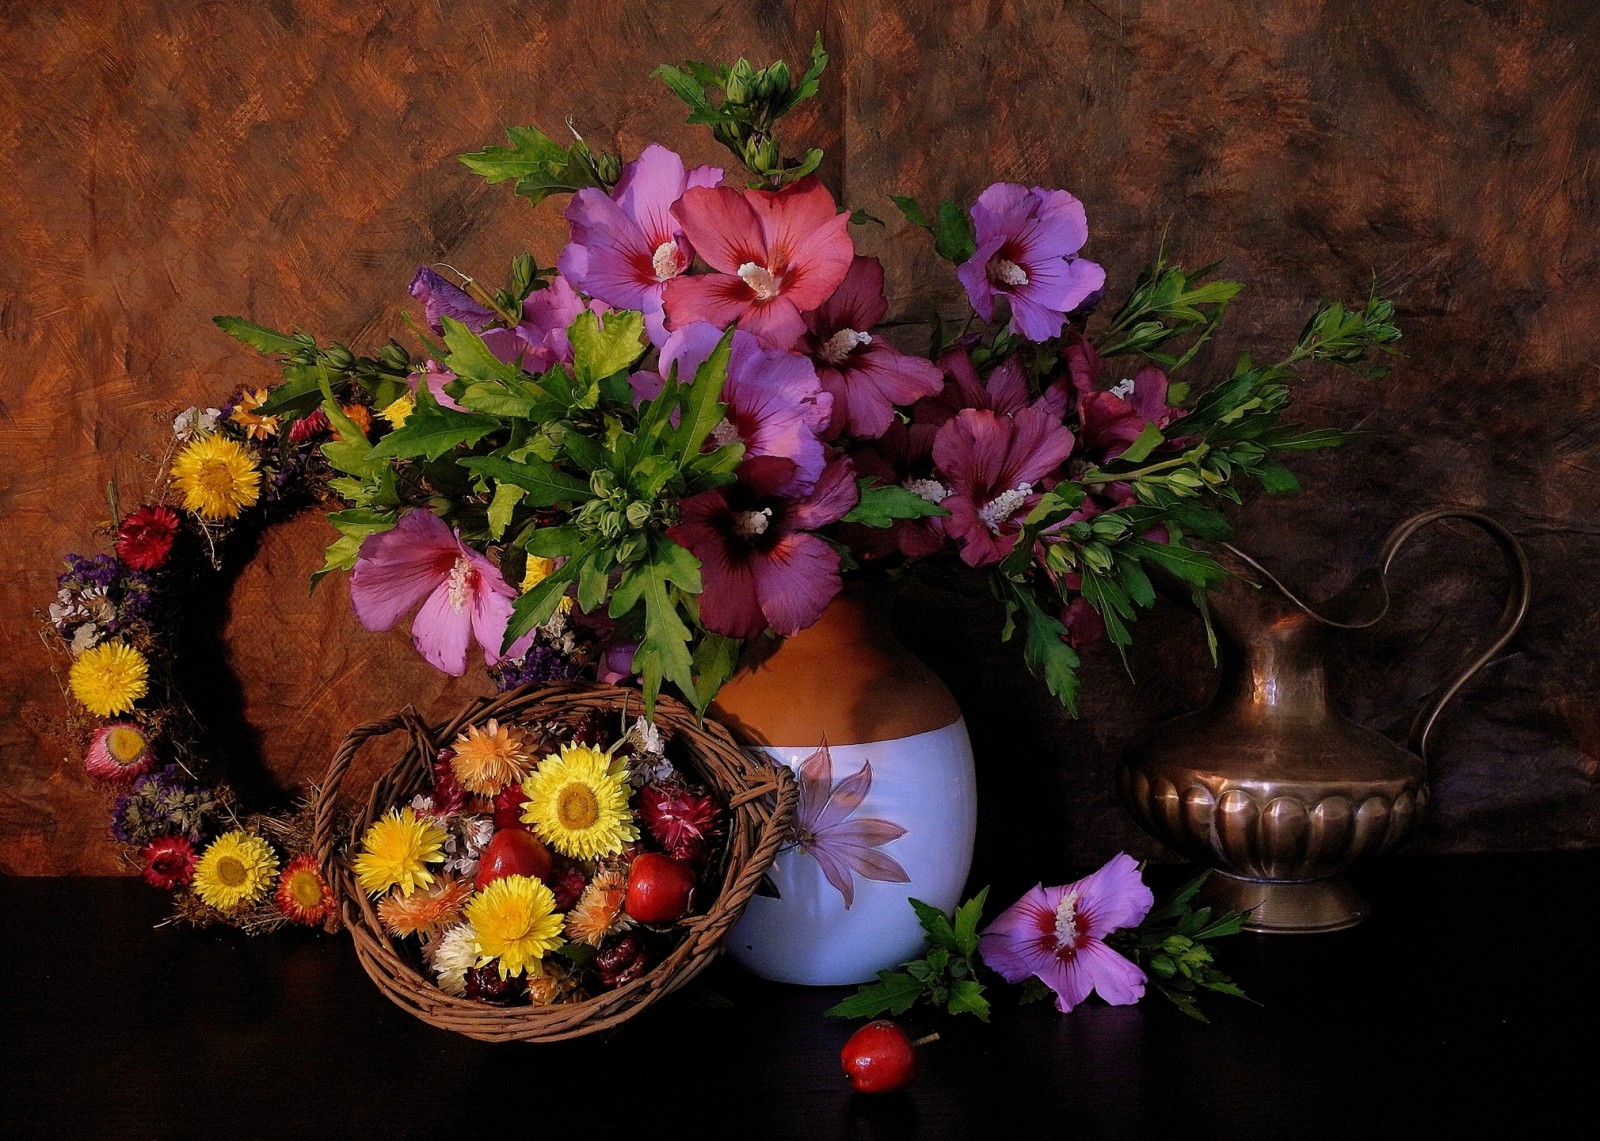 táo, cái bình hoa, Cái bình, vòng hoa, rêu, Ranetki, Hoa cúc